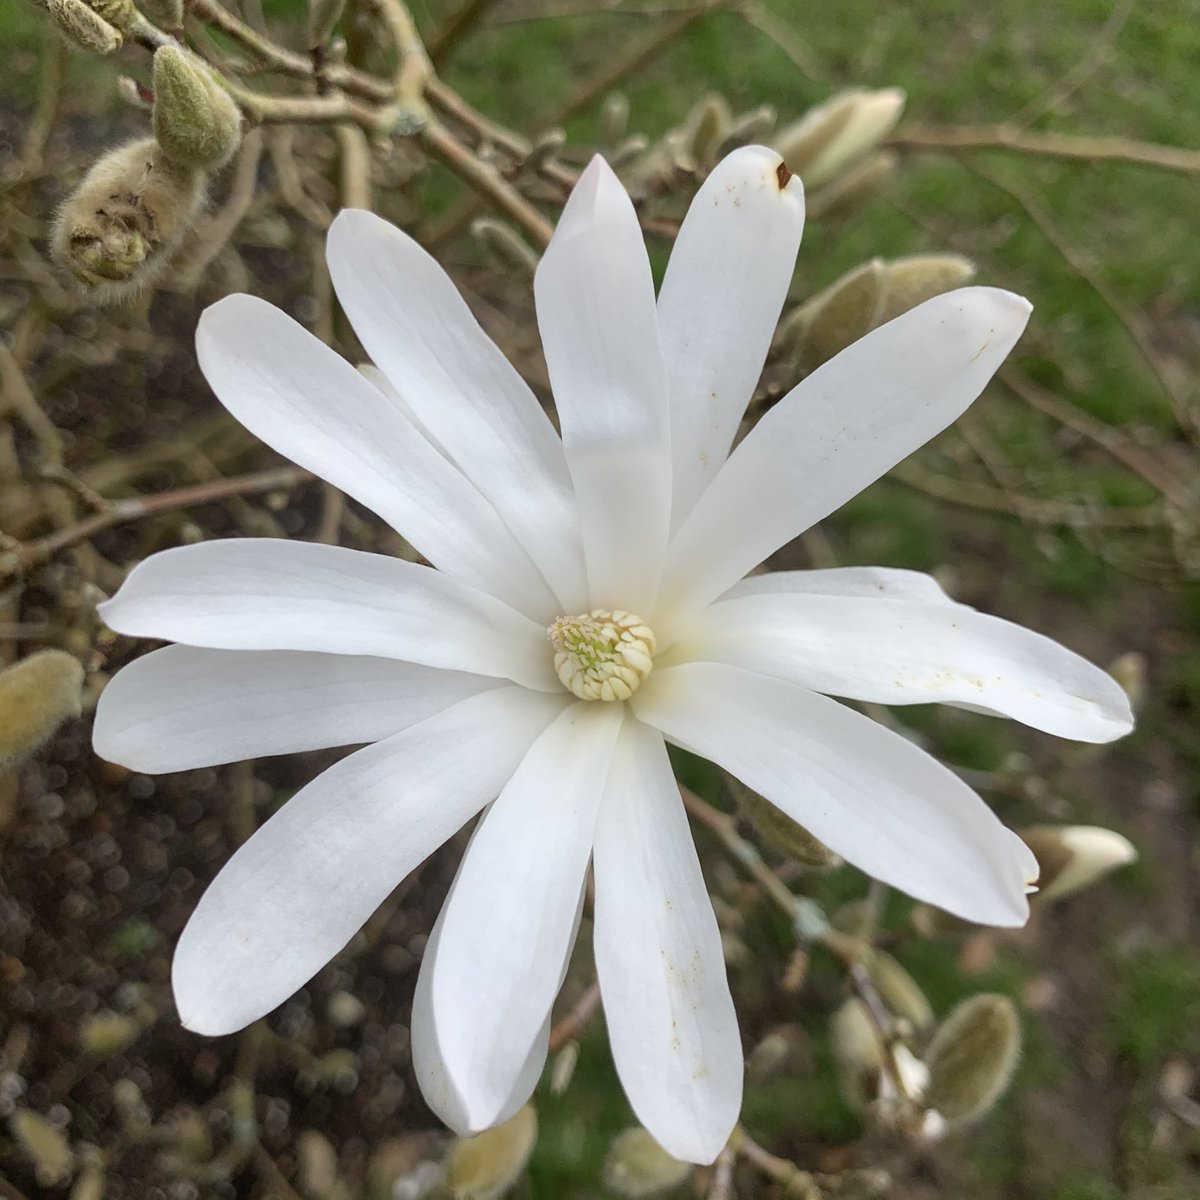 Magnolia stellata - sadly no smellovision as she smells glorious... @SculptureLakes #magnolia #springflowers #dorsetgardens #scentedflowers